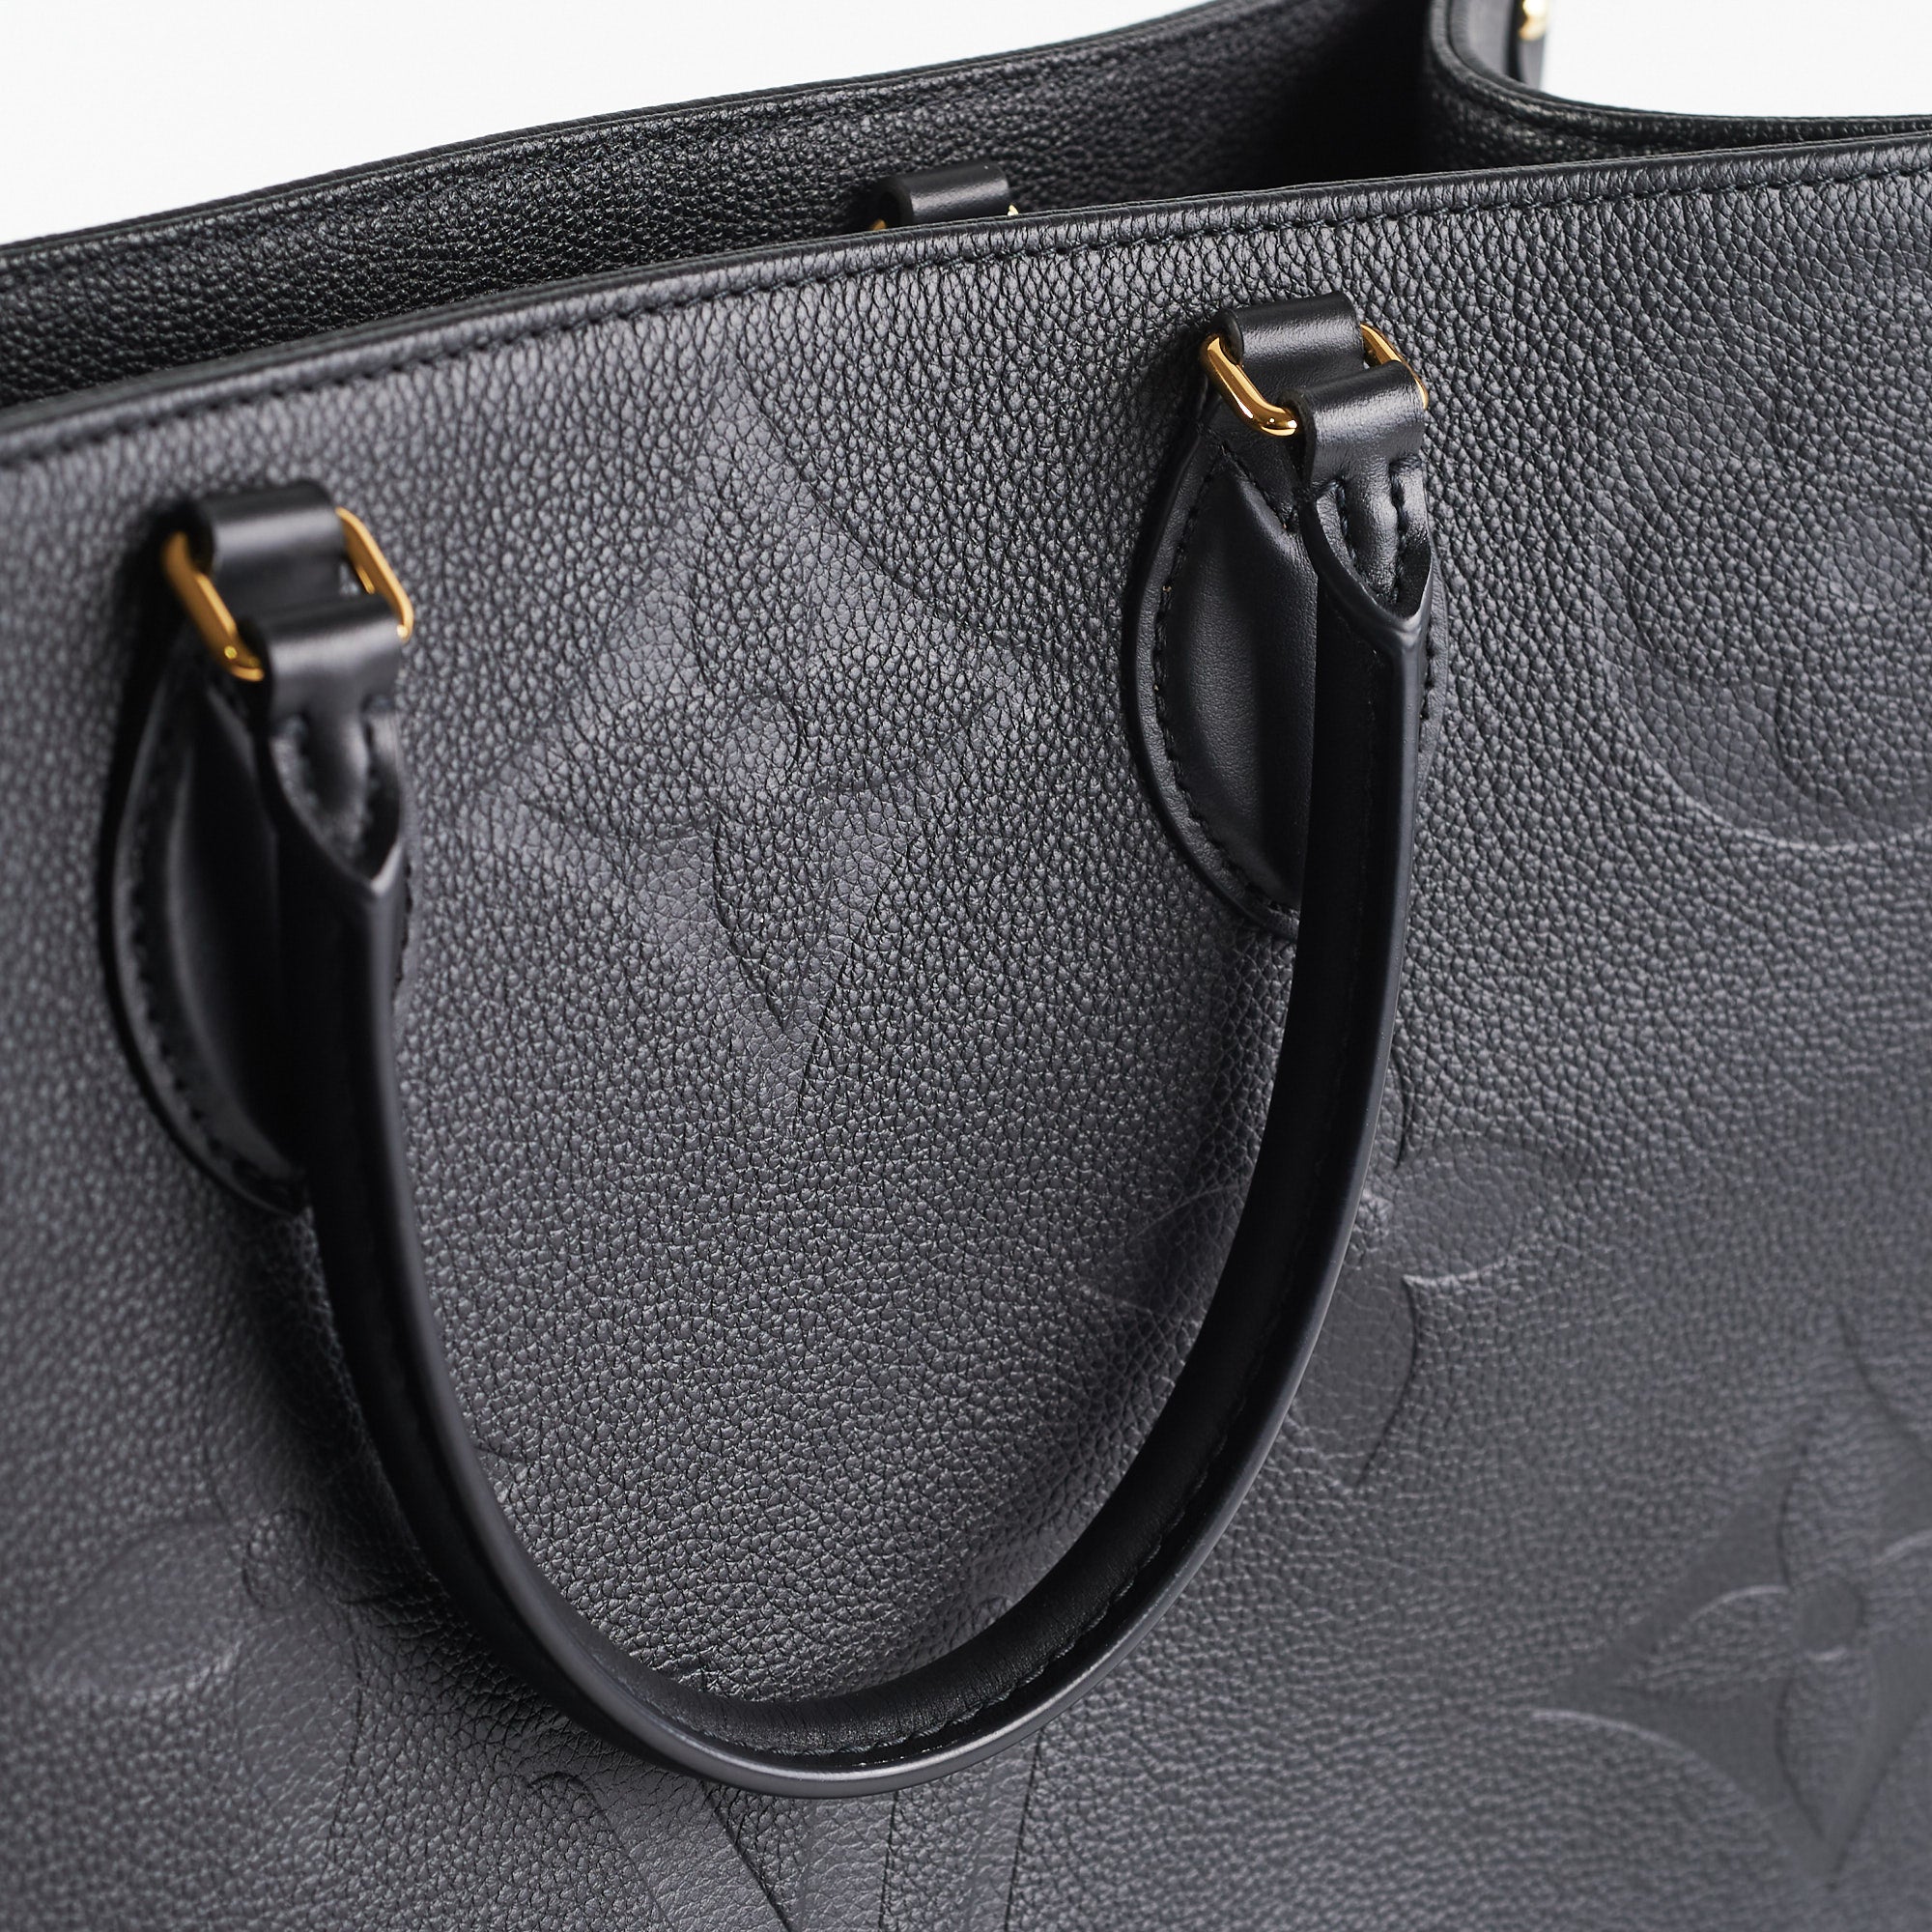 Comme des Garçons x Louis Vuitton Black Monogram Empreinte Bag with Holes  PM QJBIYO1DKF001